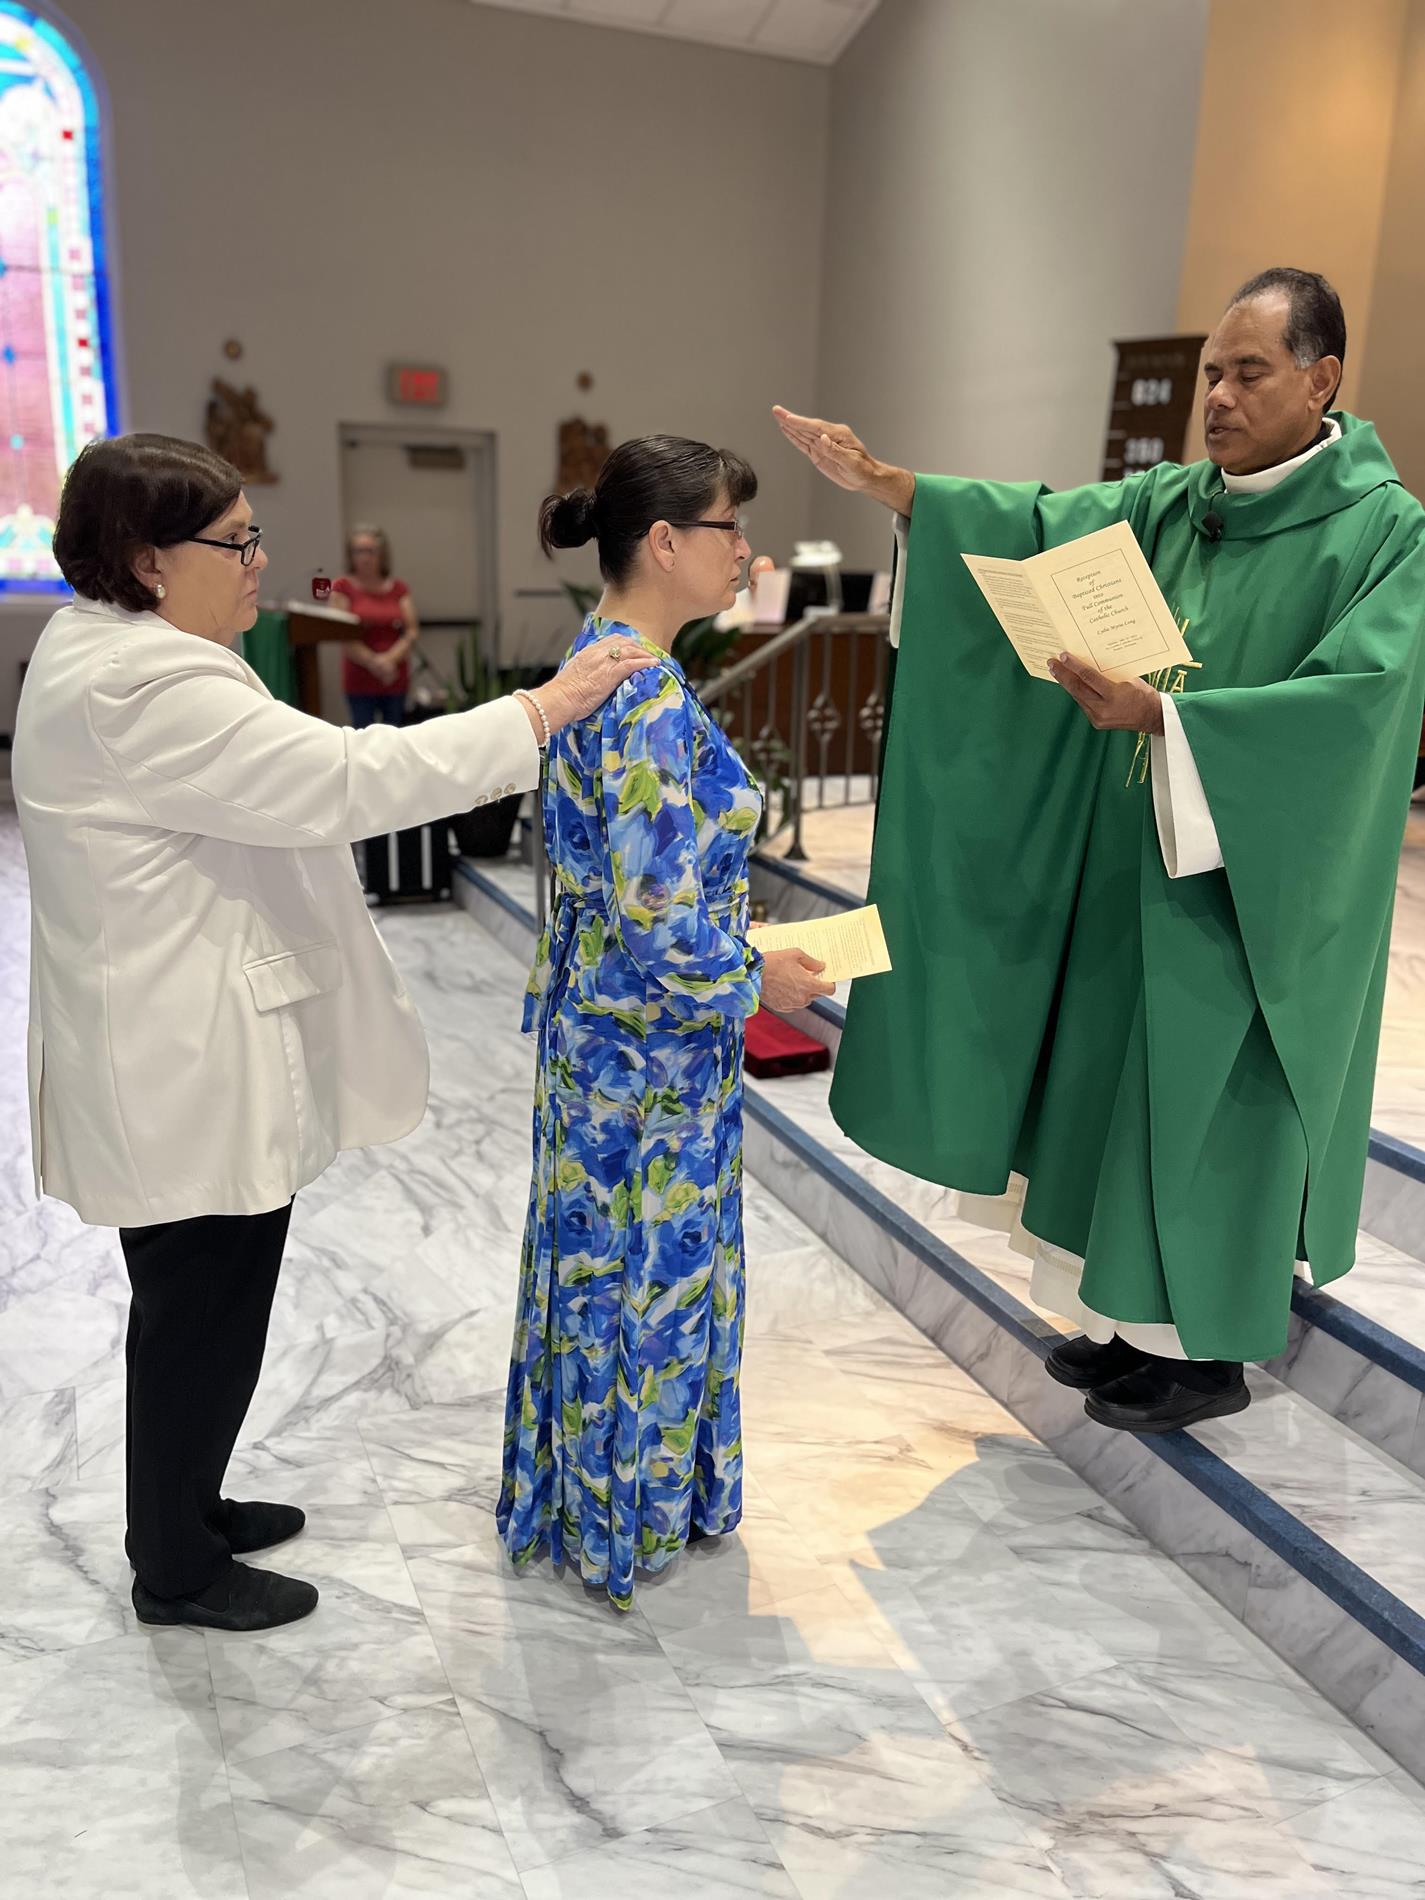 Fr. Antony extends blessing